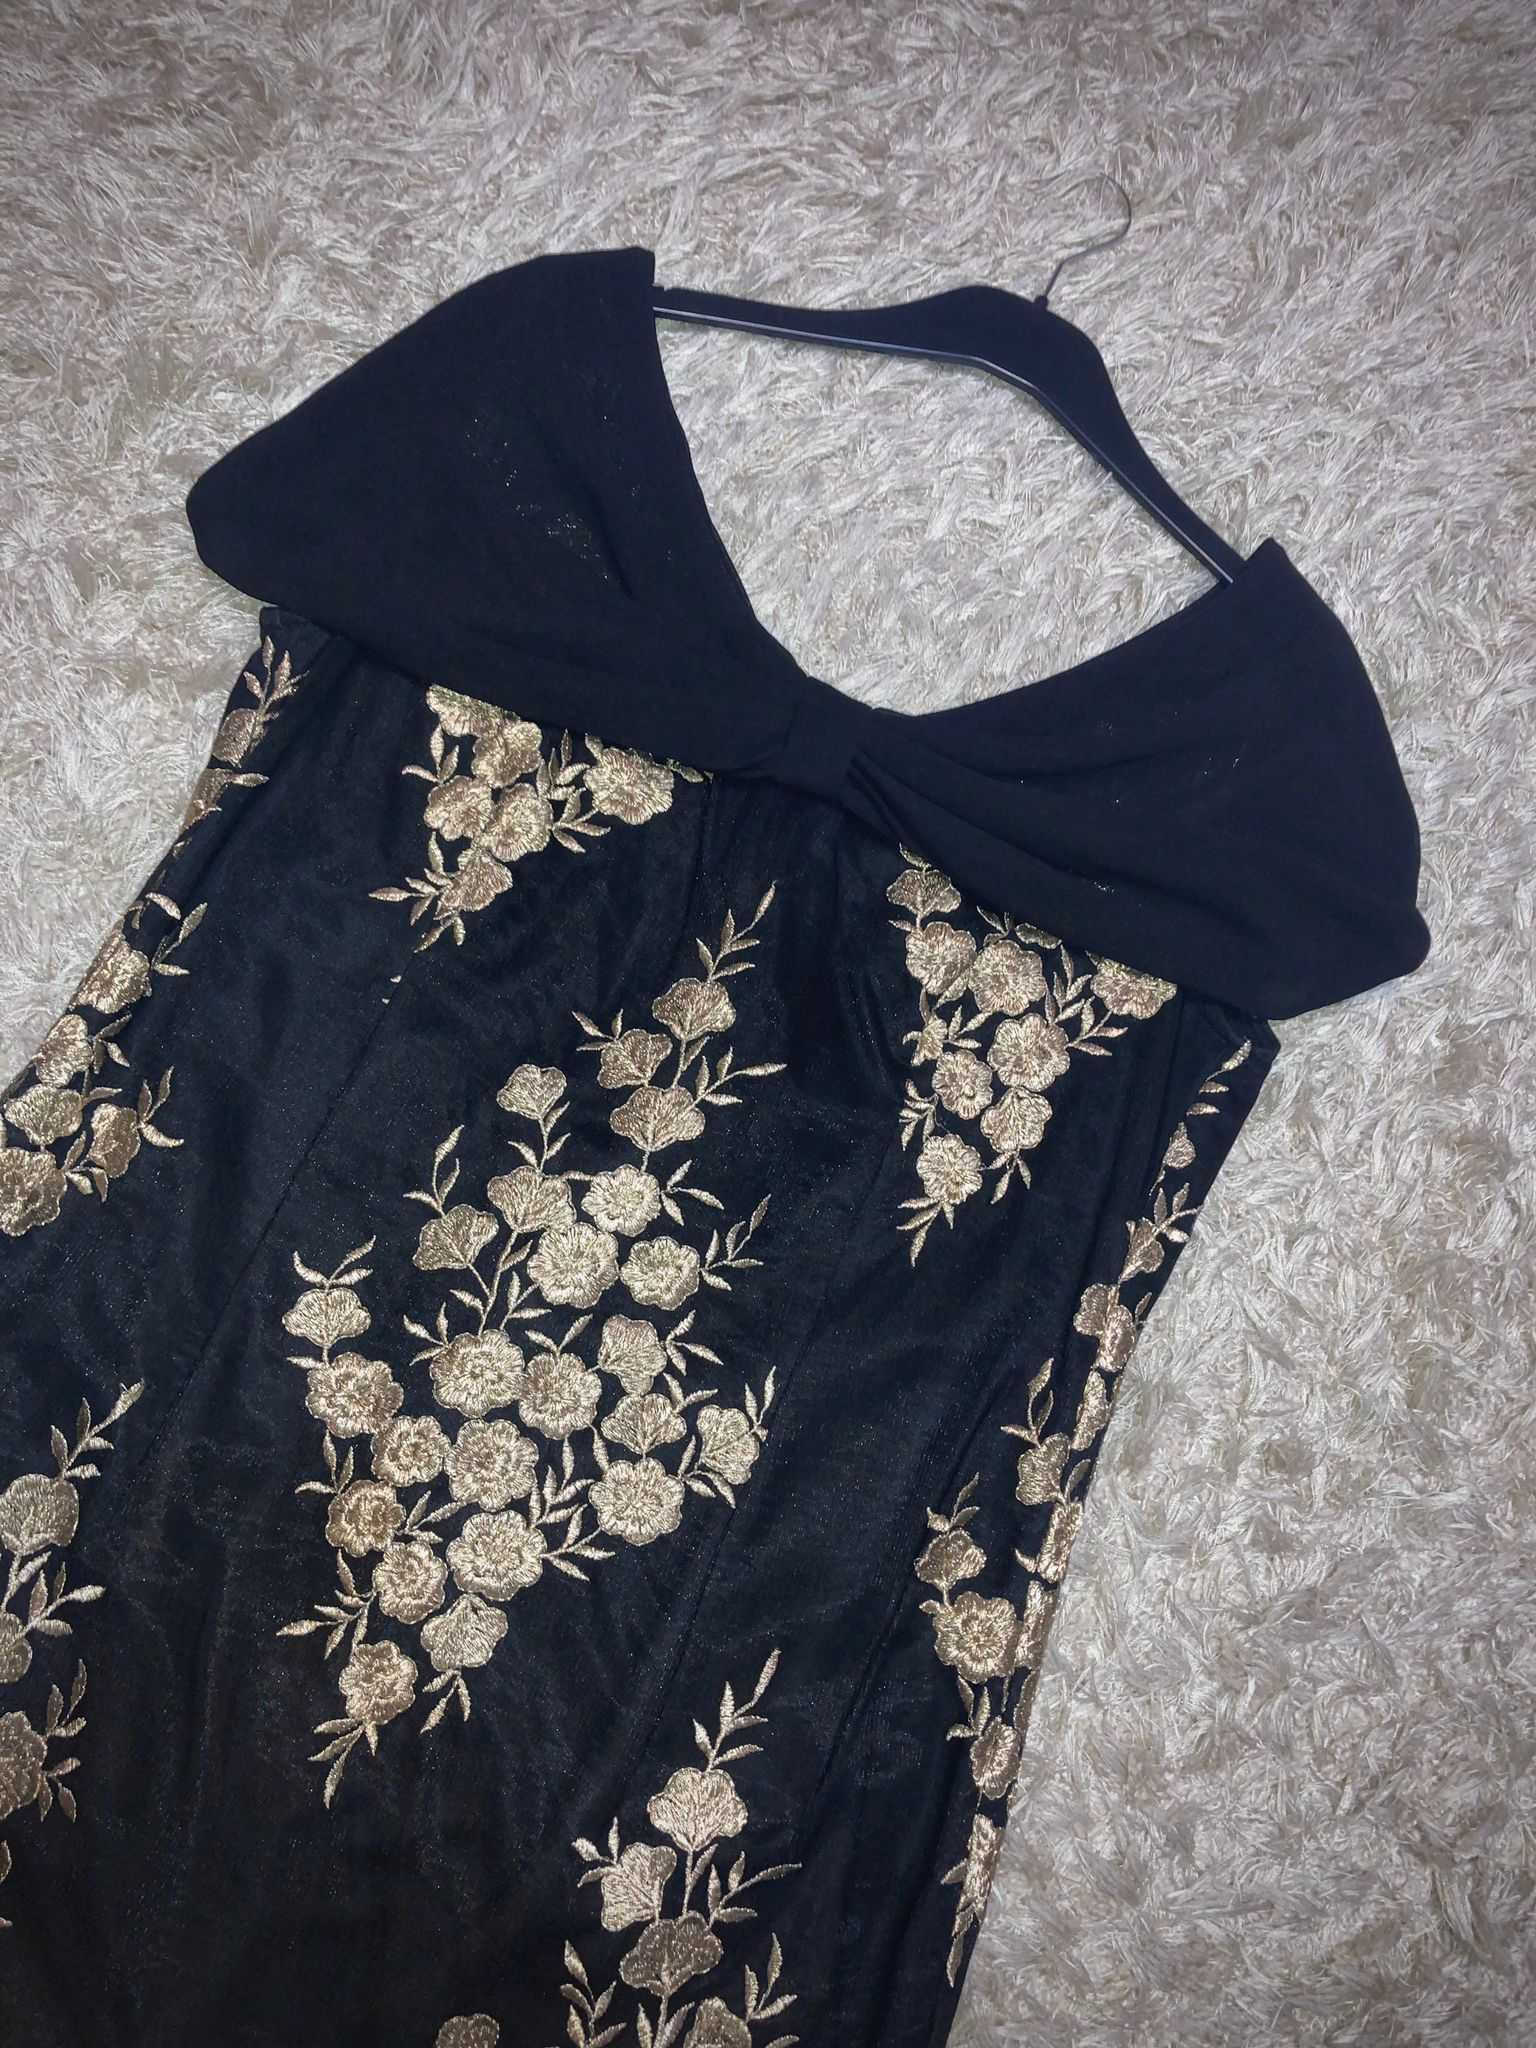 Vând rochie neagră cu broderie aurie/elegantă